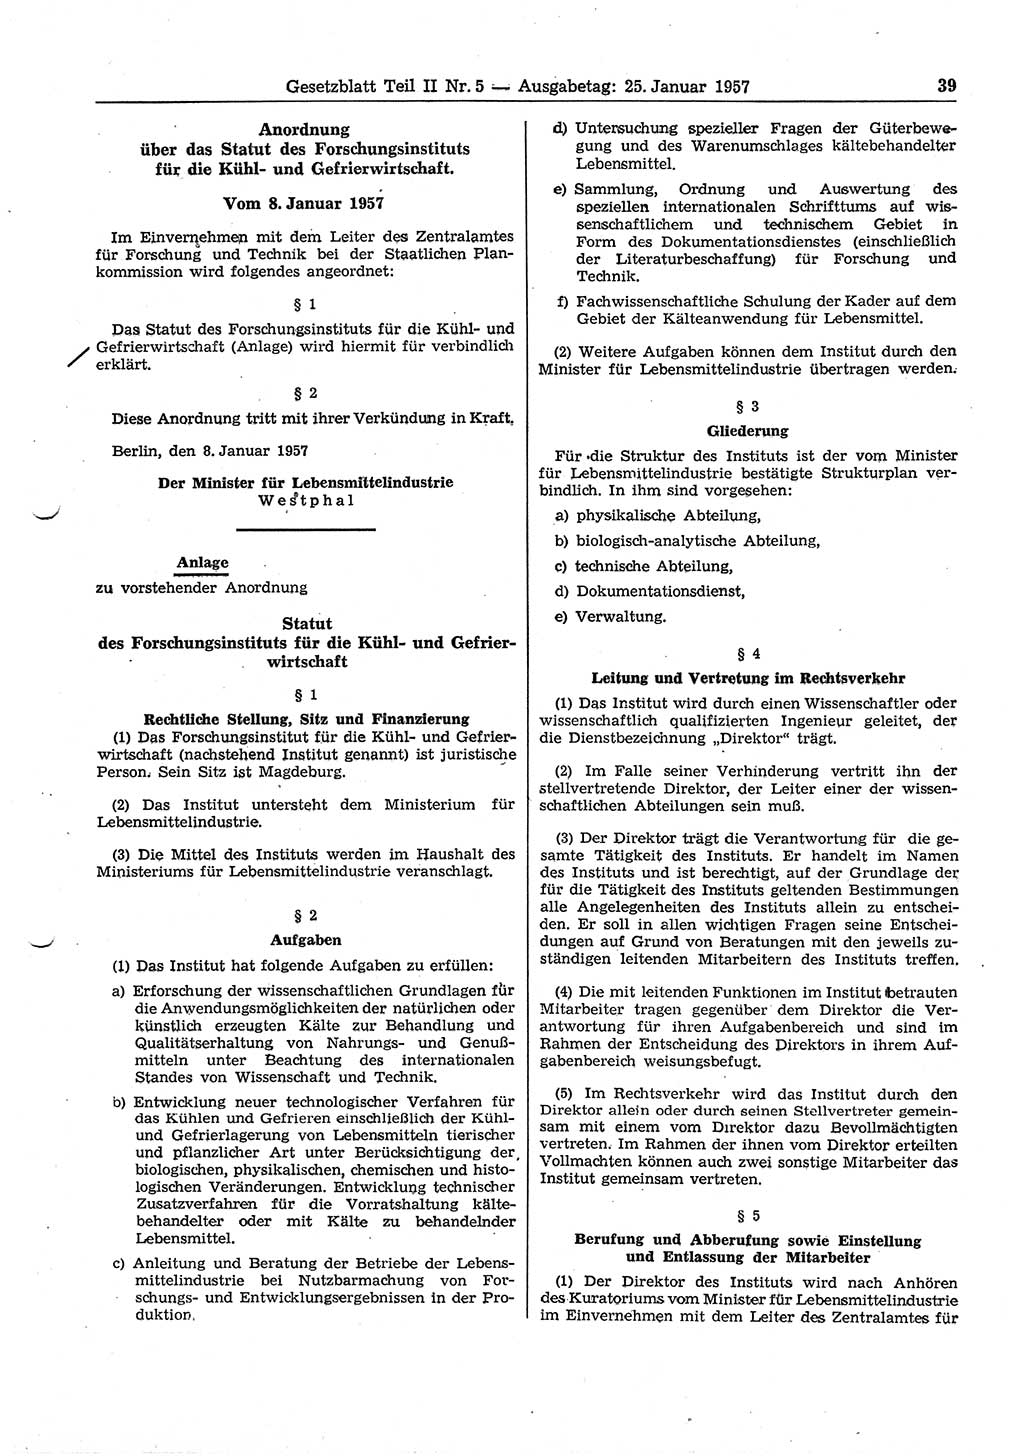 Gesetzblatt (GBl.) der Deutschen Demokratischen Republik (DDR) Teil ⅠⅠ 1957, Seite 39 (GBl. DDR ⅠⅠ 1957, S. 39)